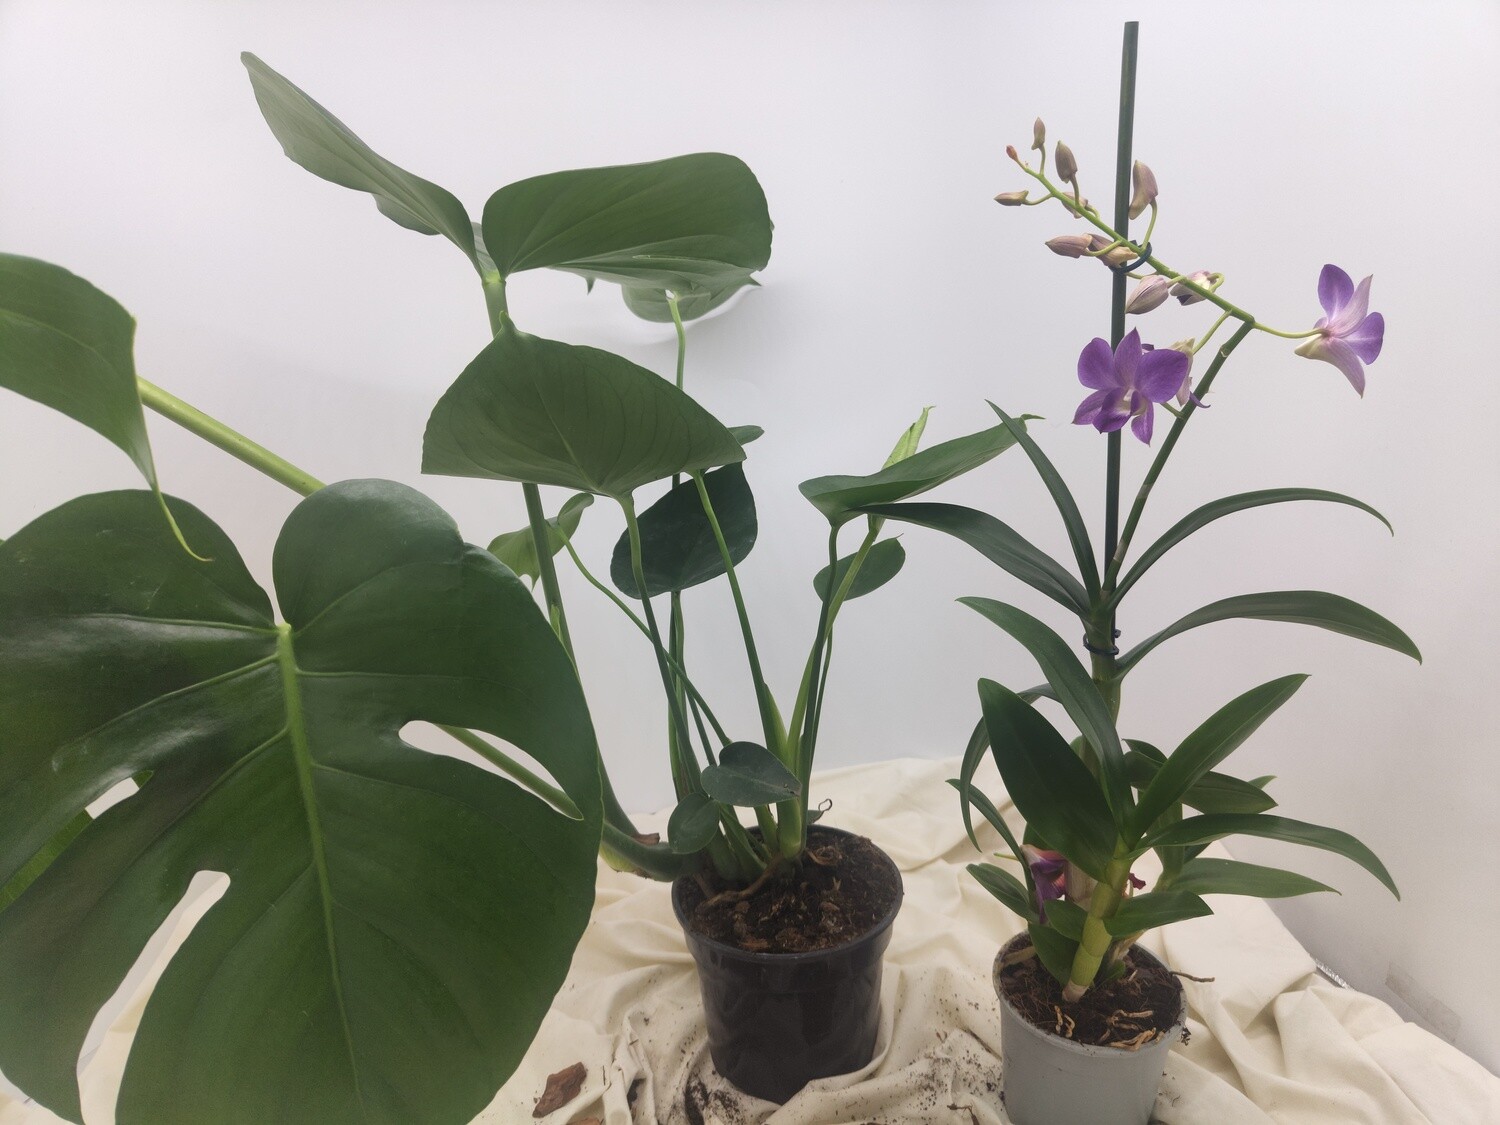 Pack "AmaPlant" 2 plantas muy lindas: Monstera deliciosa + Orquidea Dendrobium - ENVIO INCLUIDO